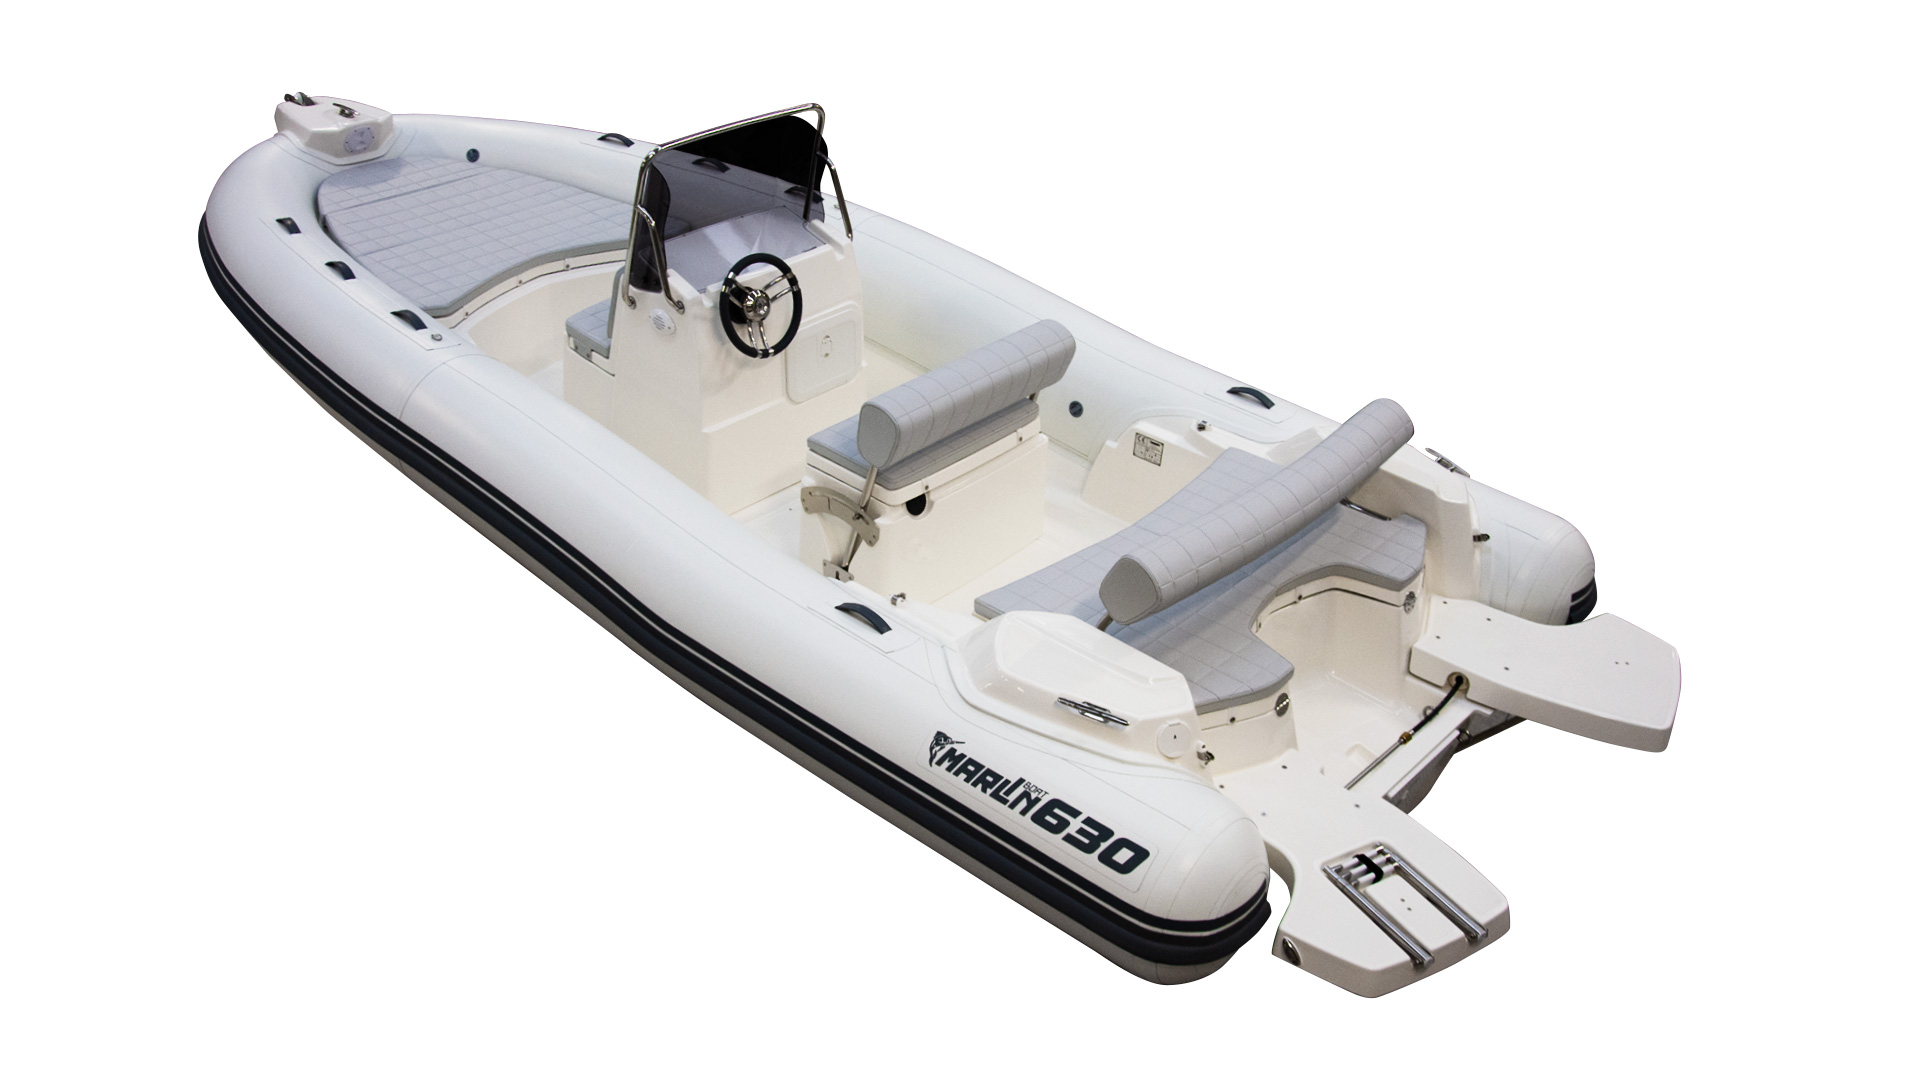 Marlin Boat - Gommone Fuoribordo Modello 630